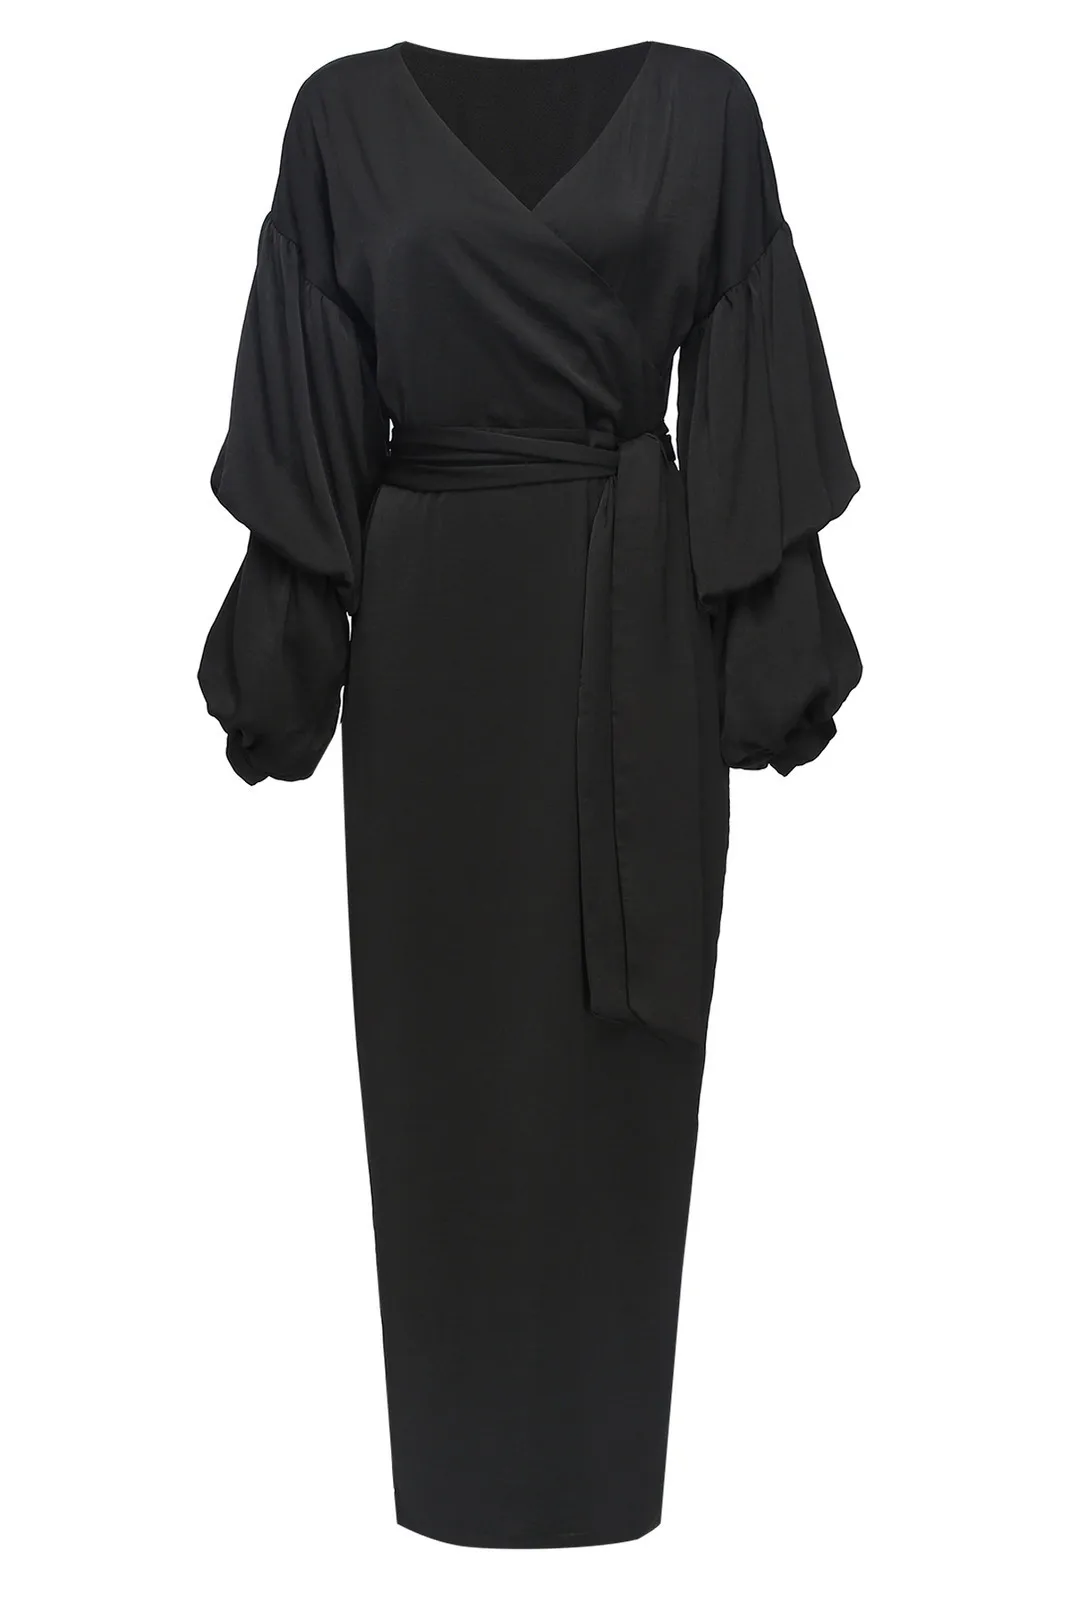 2019 модная Абая, для мусульман, исламское Новое Пышное длинное платье с длинными рукавами, элегантное платье-кафтан, Малайзия, марокканская